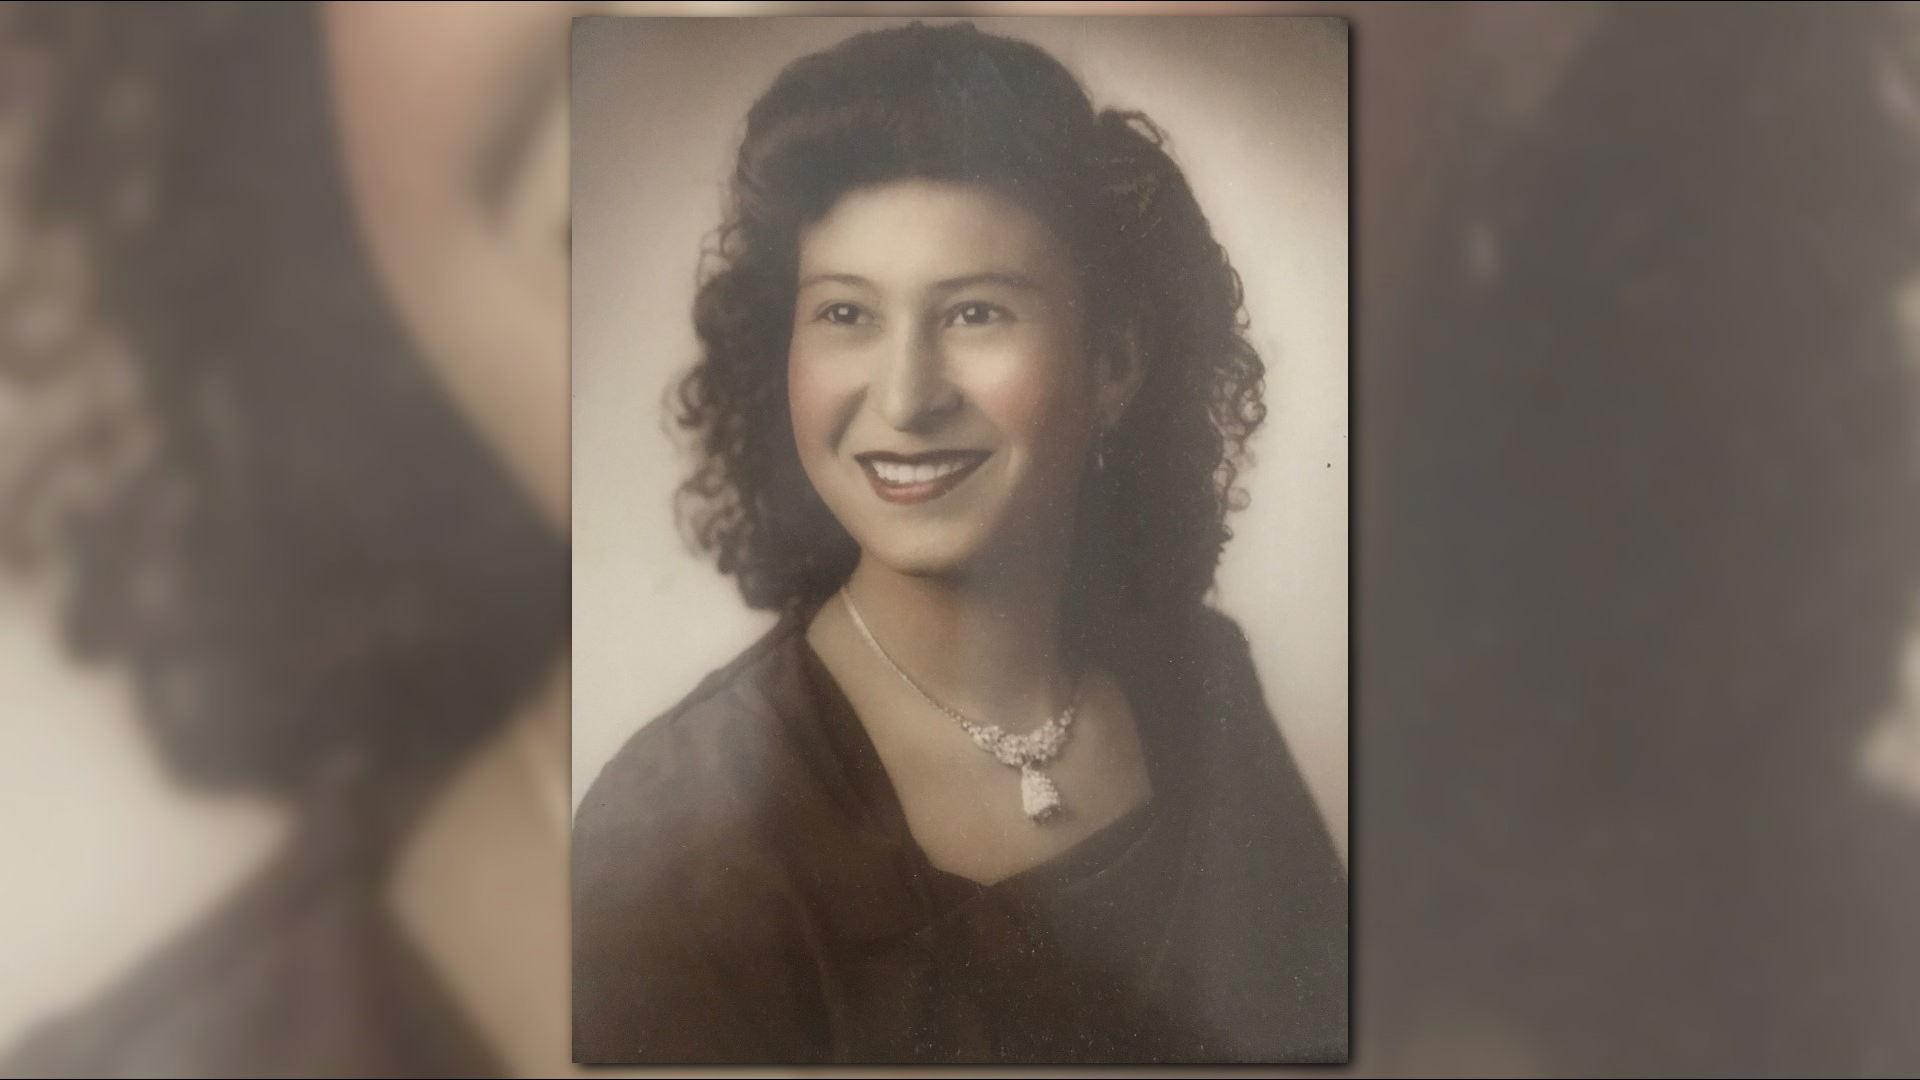 Armida Moya says she didn’t feel discrimination when she arrived to Glendale, AZ 70 years ago.